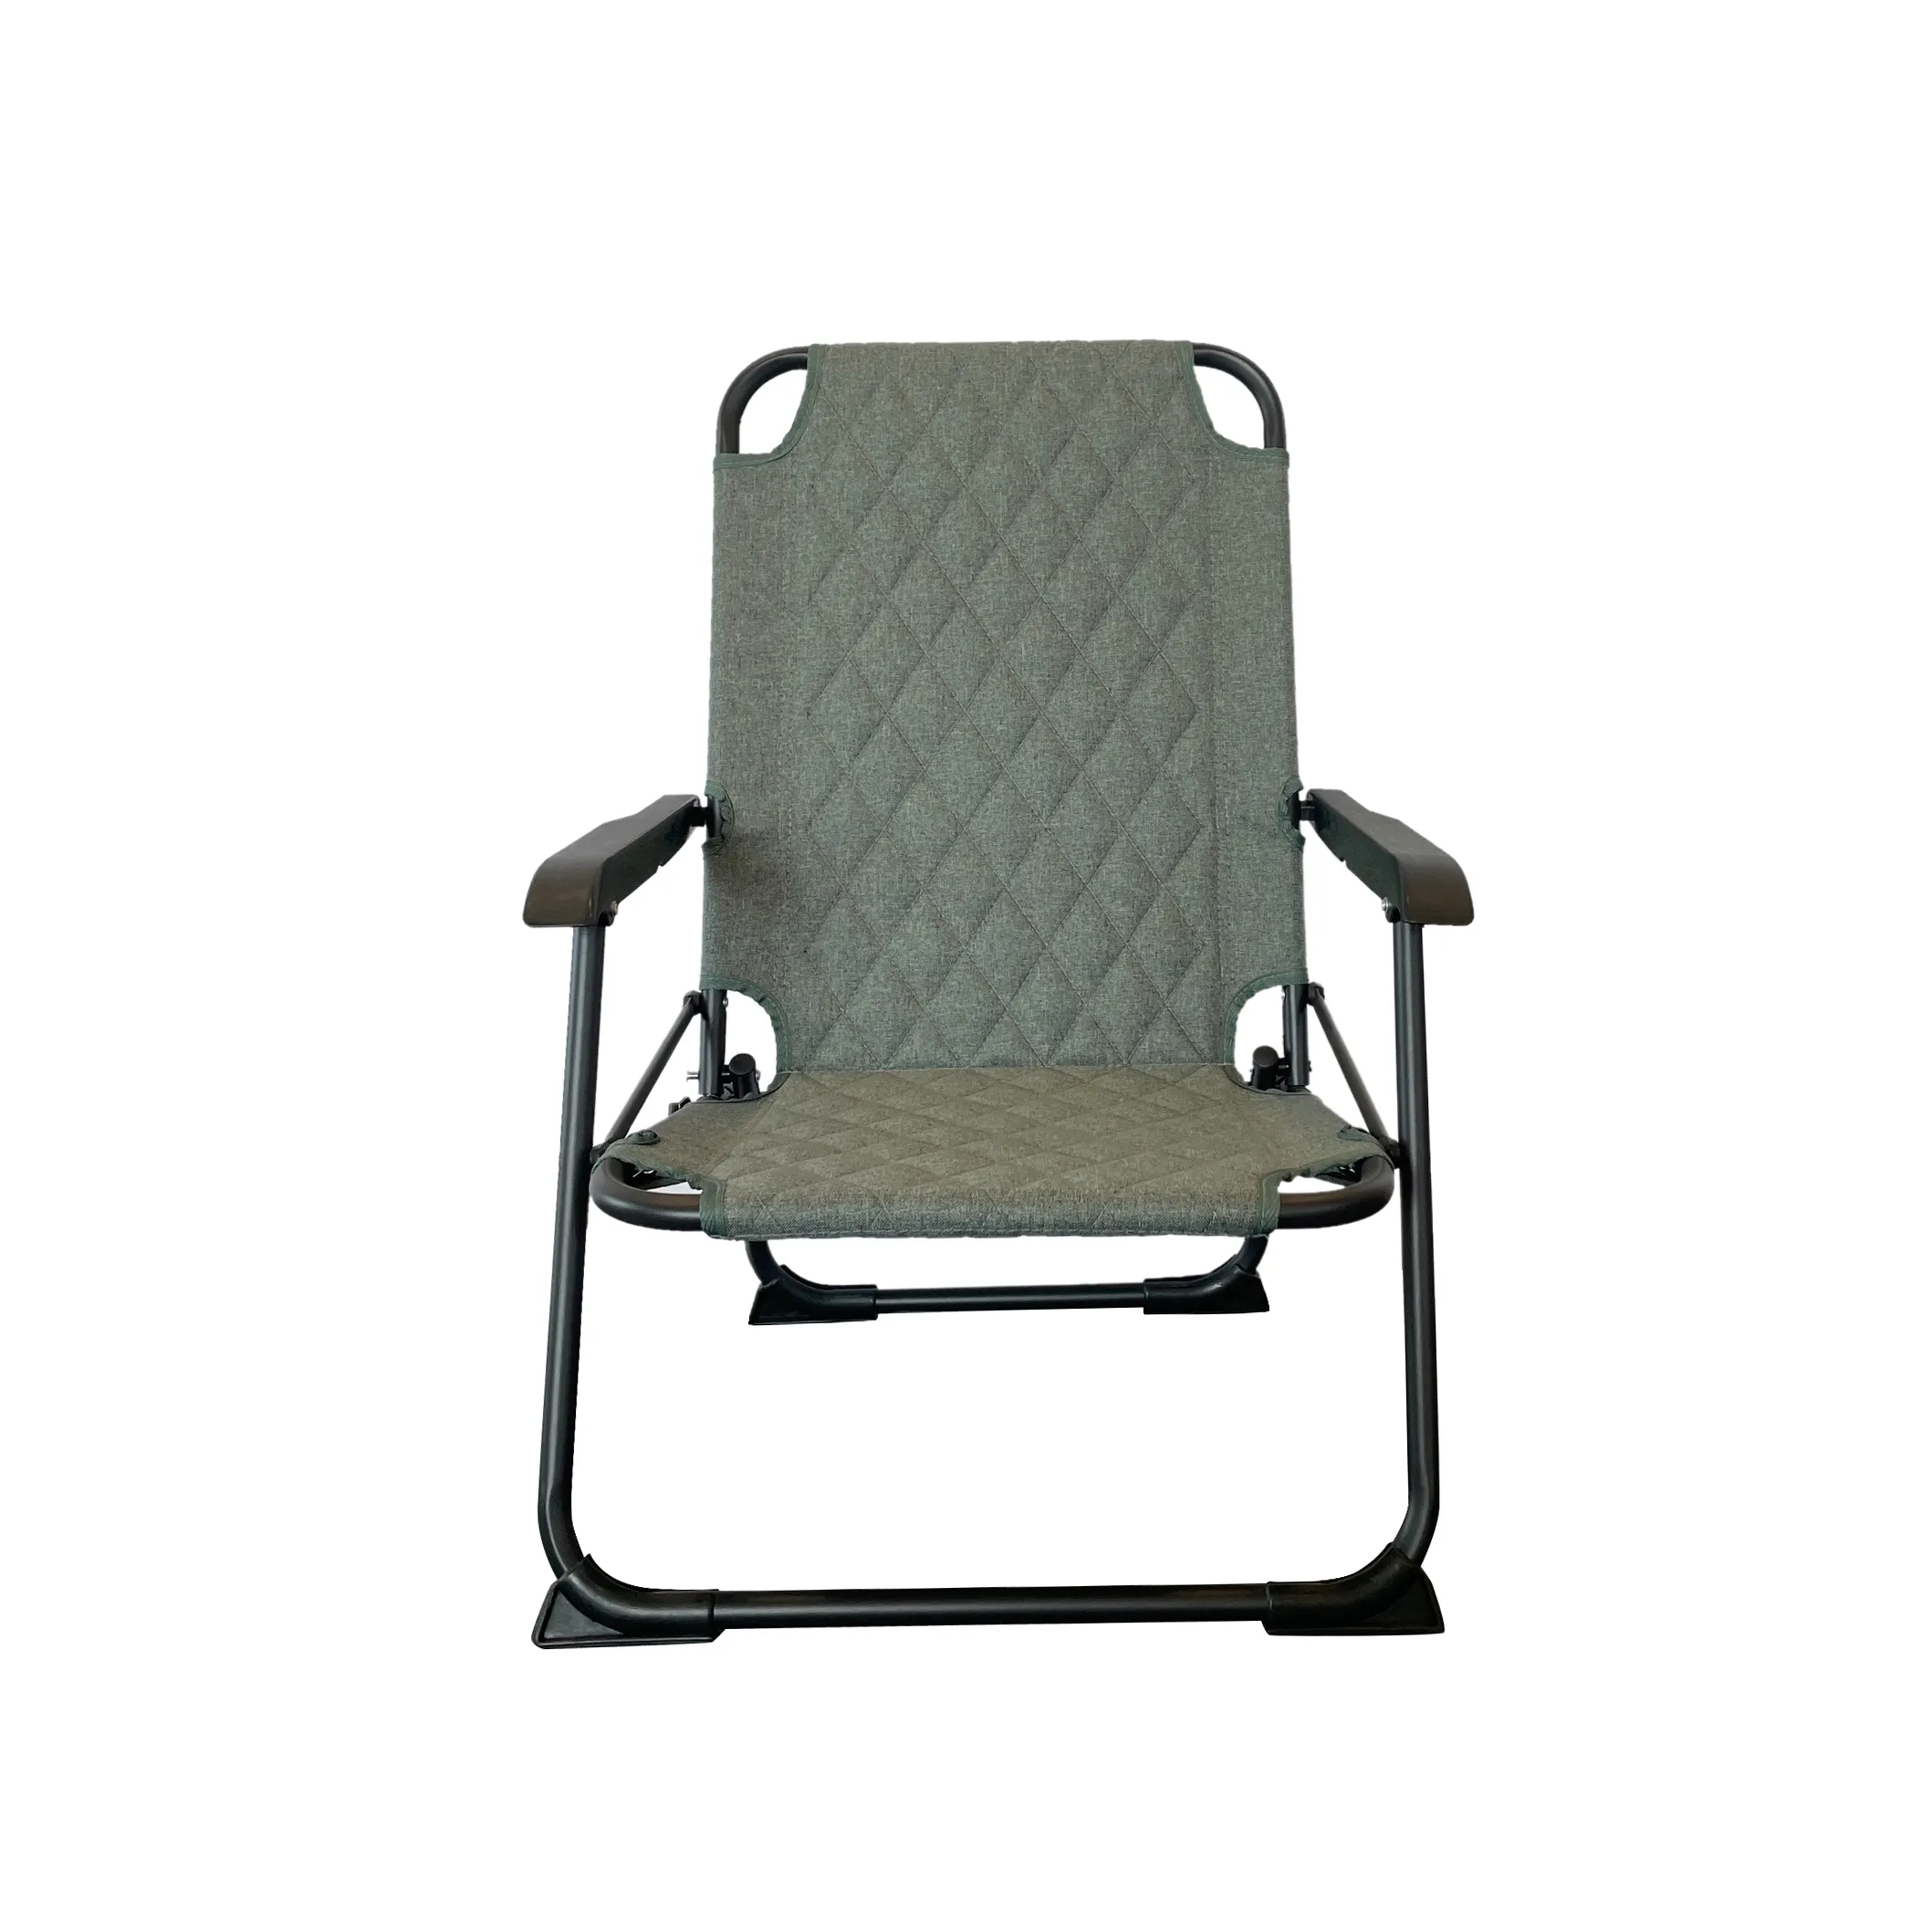 Cadeiras modernas e relaxantes para o ar livre, em alumínio verde leve, com encosto ajustável, dobrável e ajustável